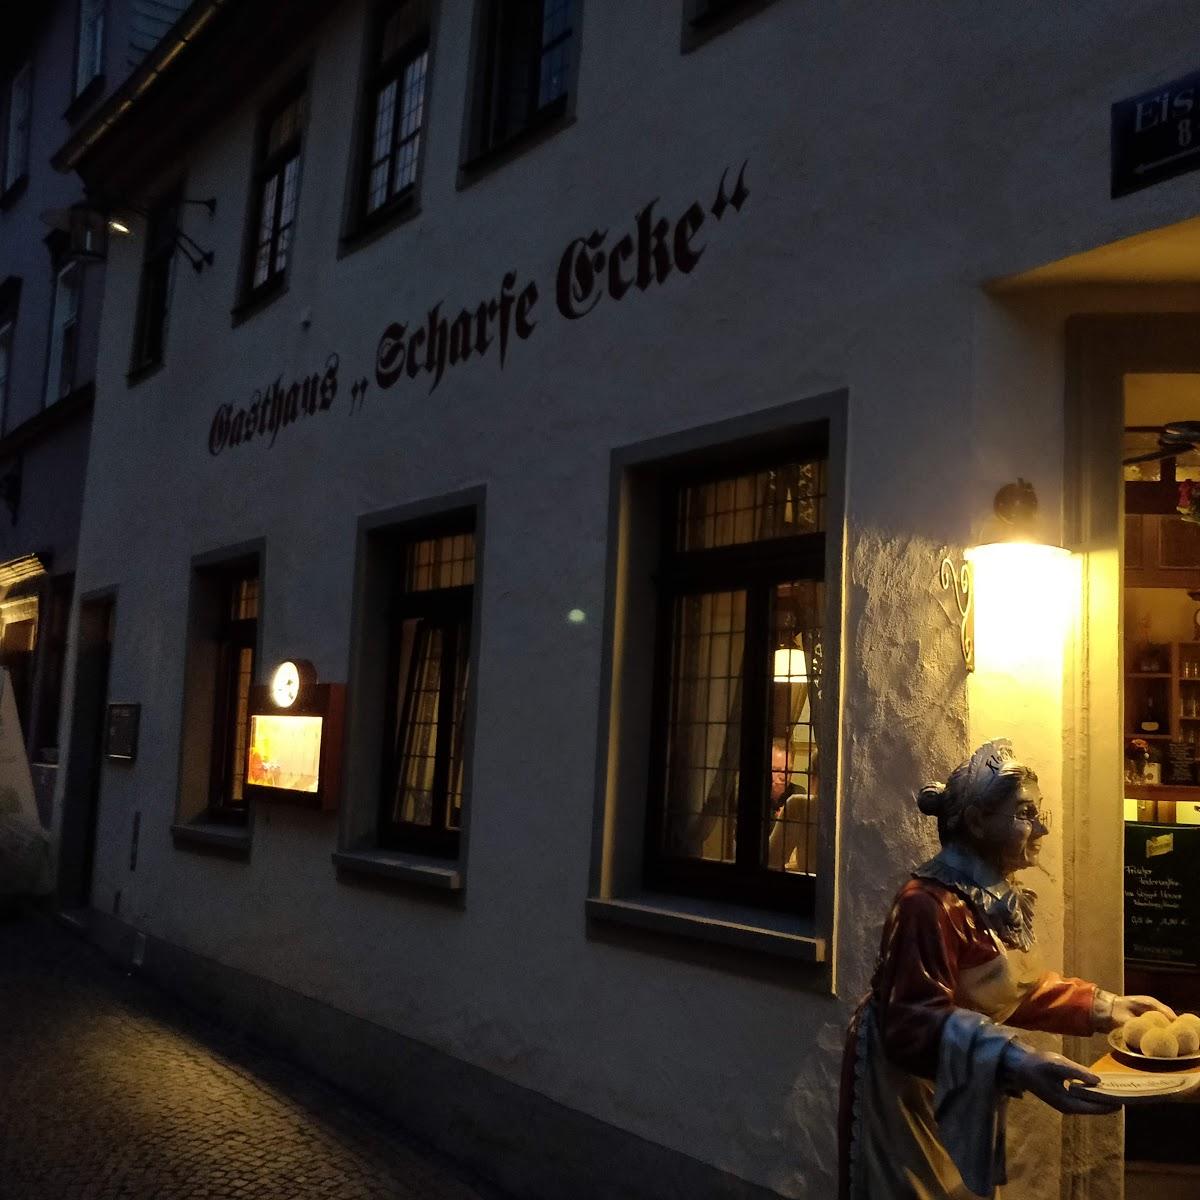 Restaurant "Scharfe Ecke" in  Weimar